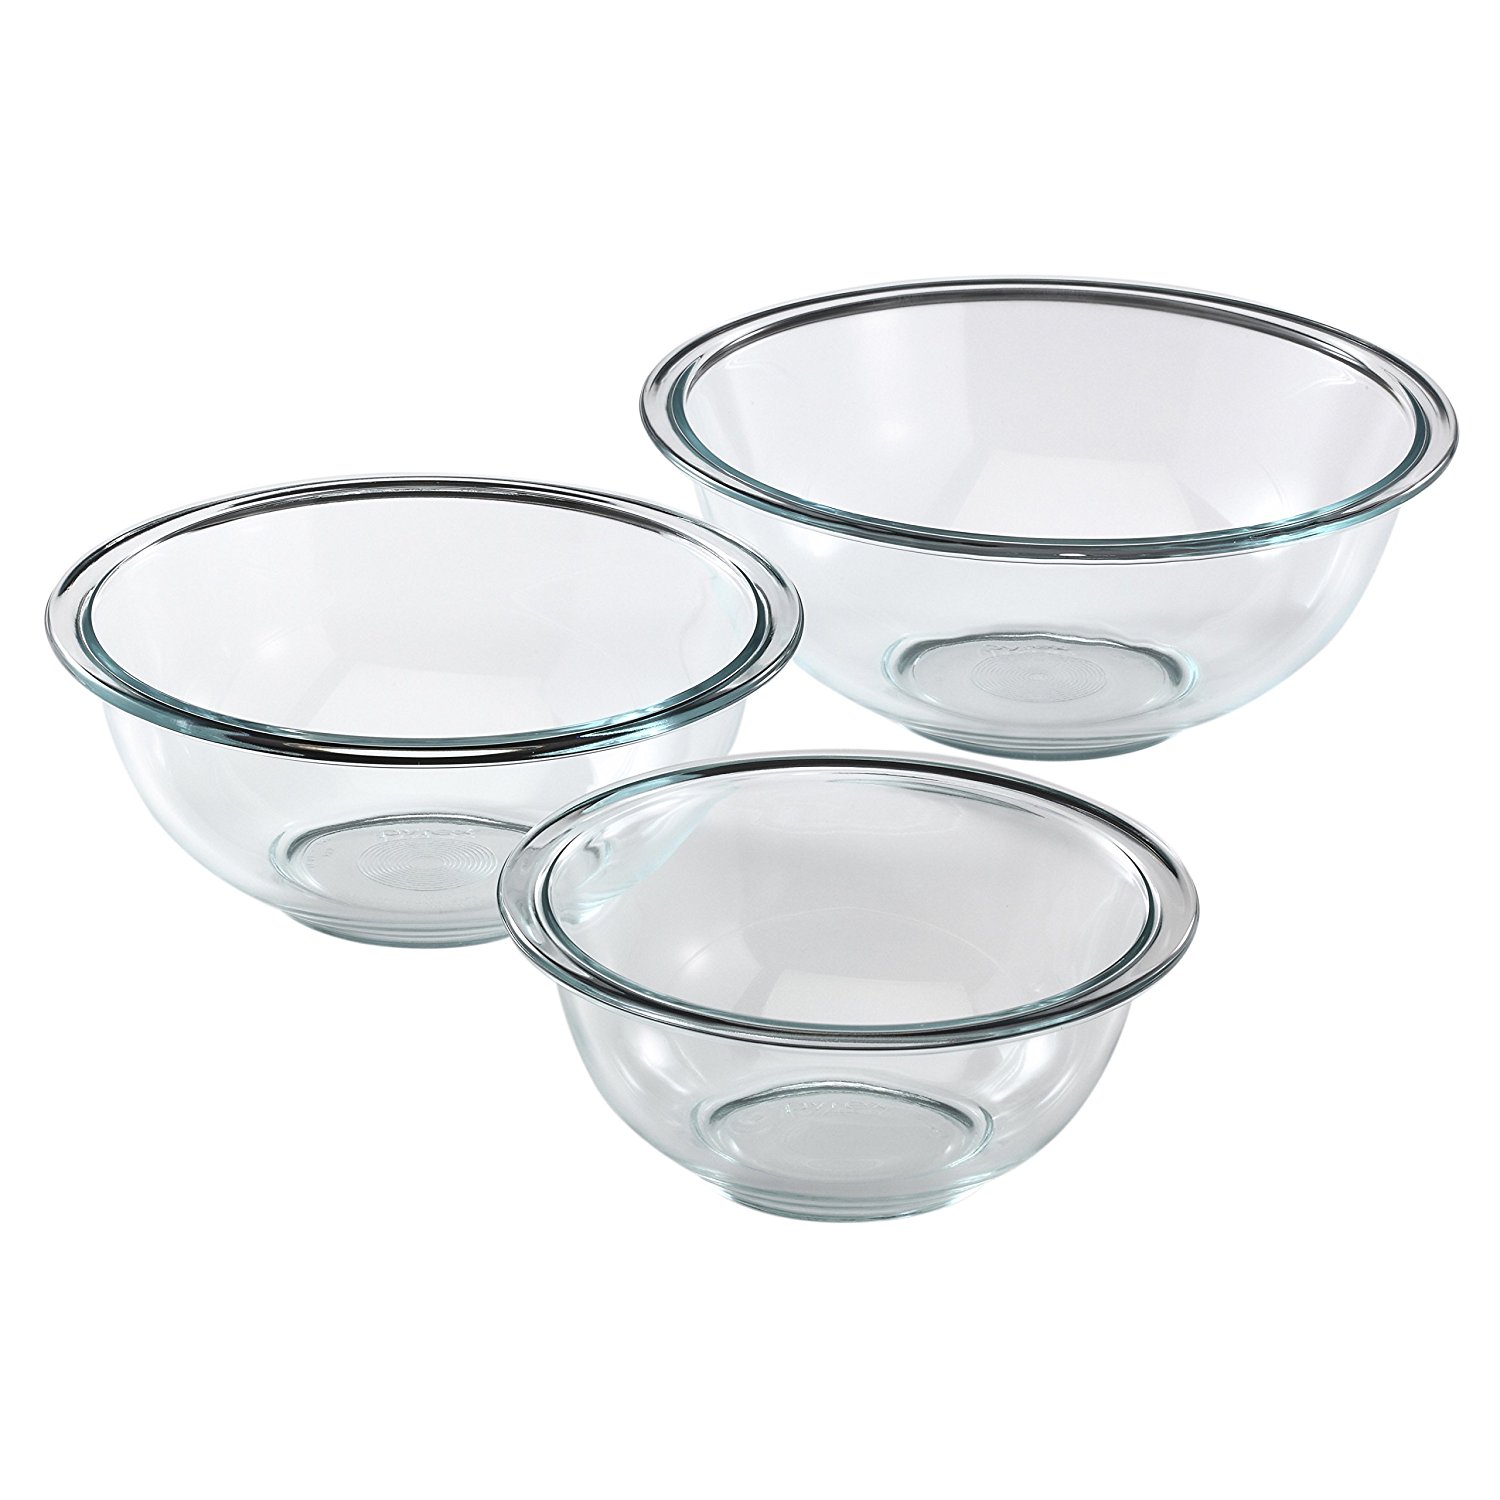 Pyrex Prepware 3-Piece Glass Mixing Bowl Set – Just $10.63!